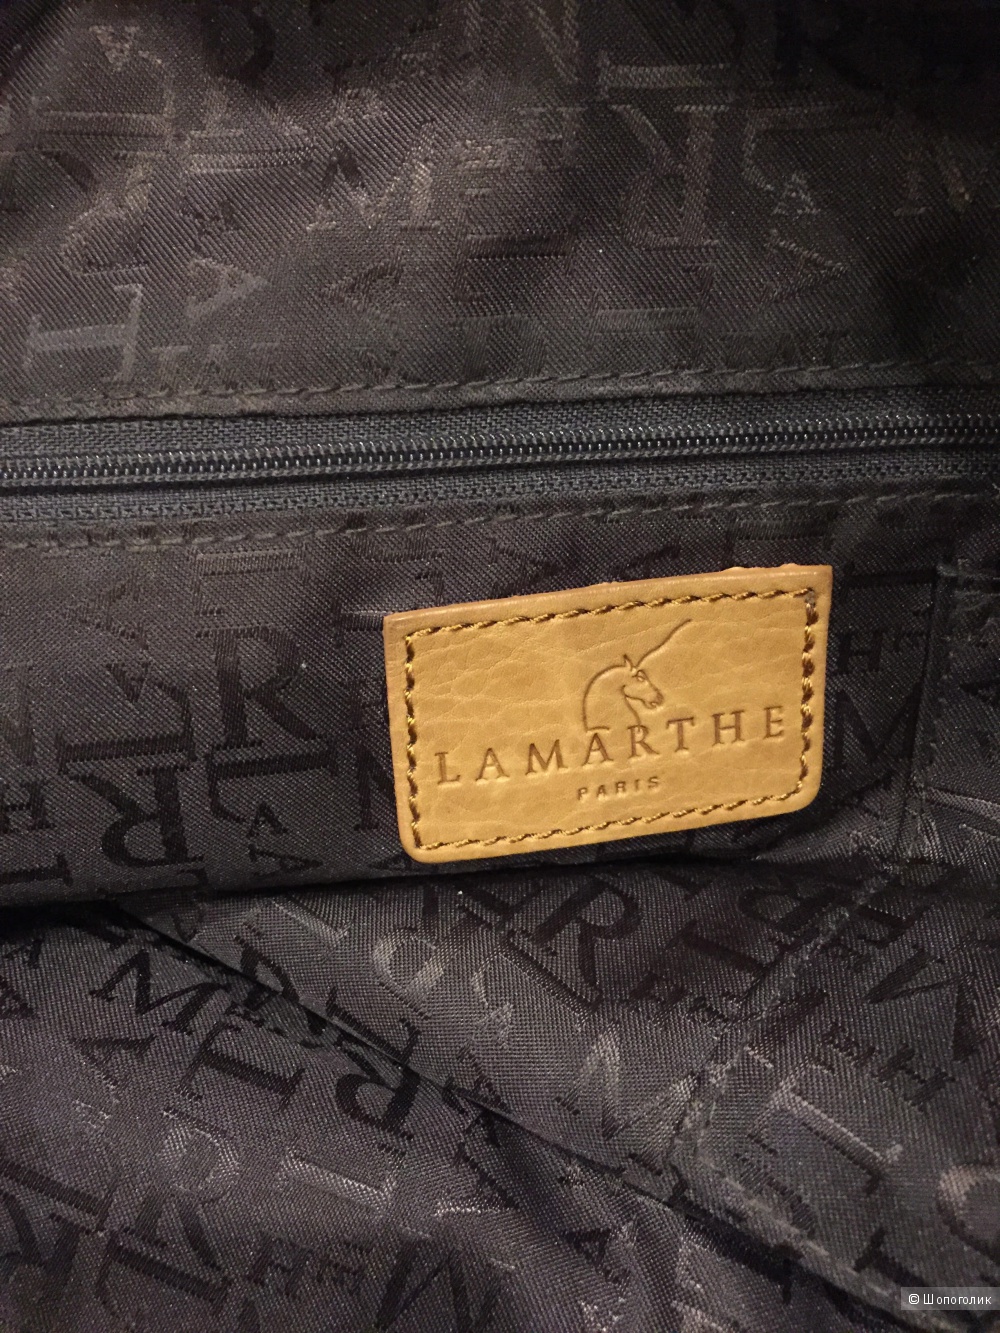 Сумка люксового французского бренда Lamarthe.